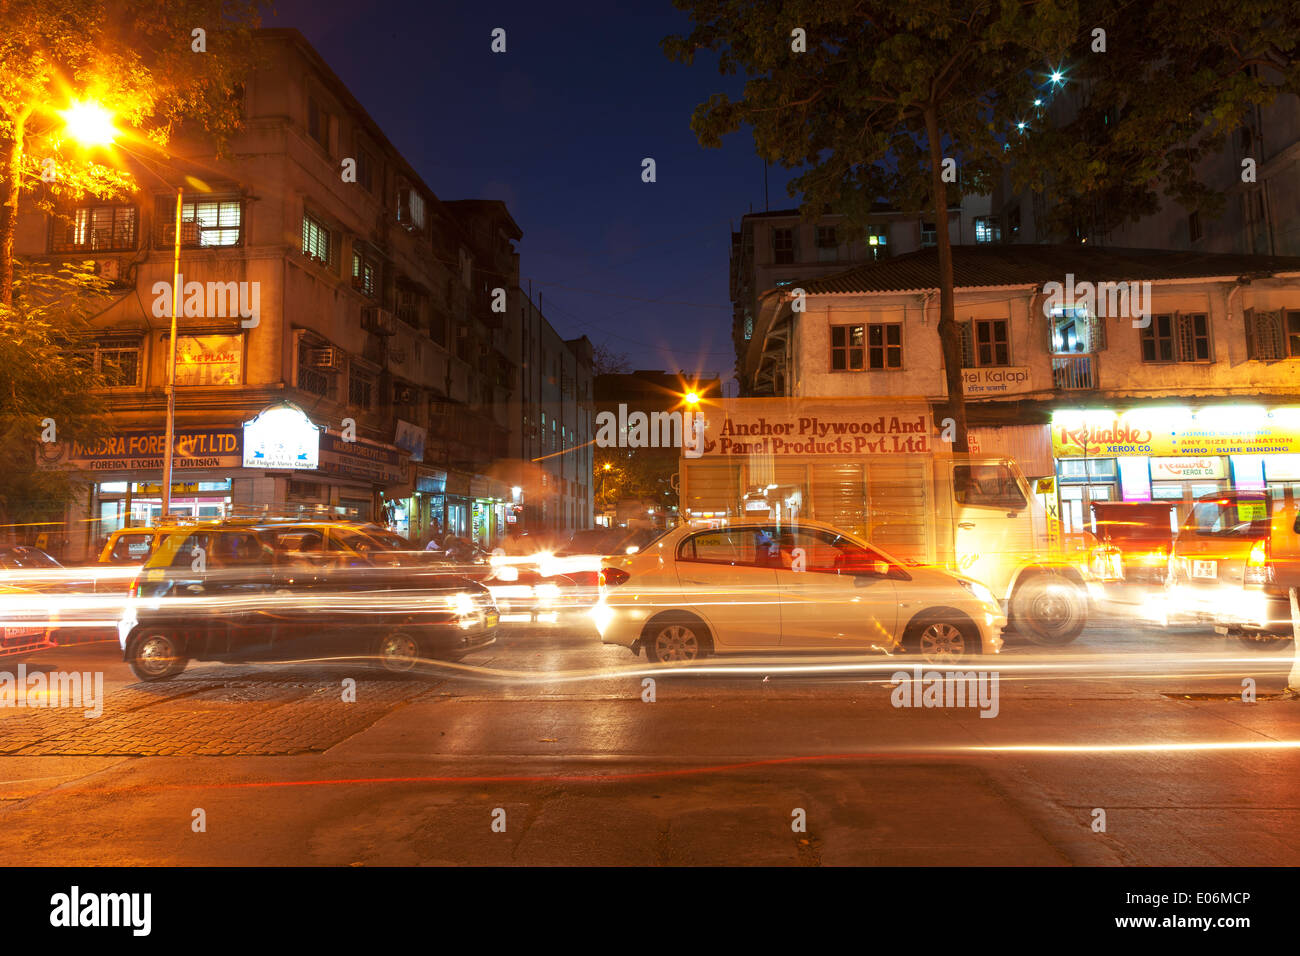 Mumbai India busy street early evening Stock Photo